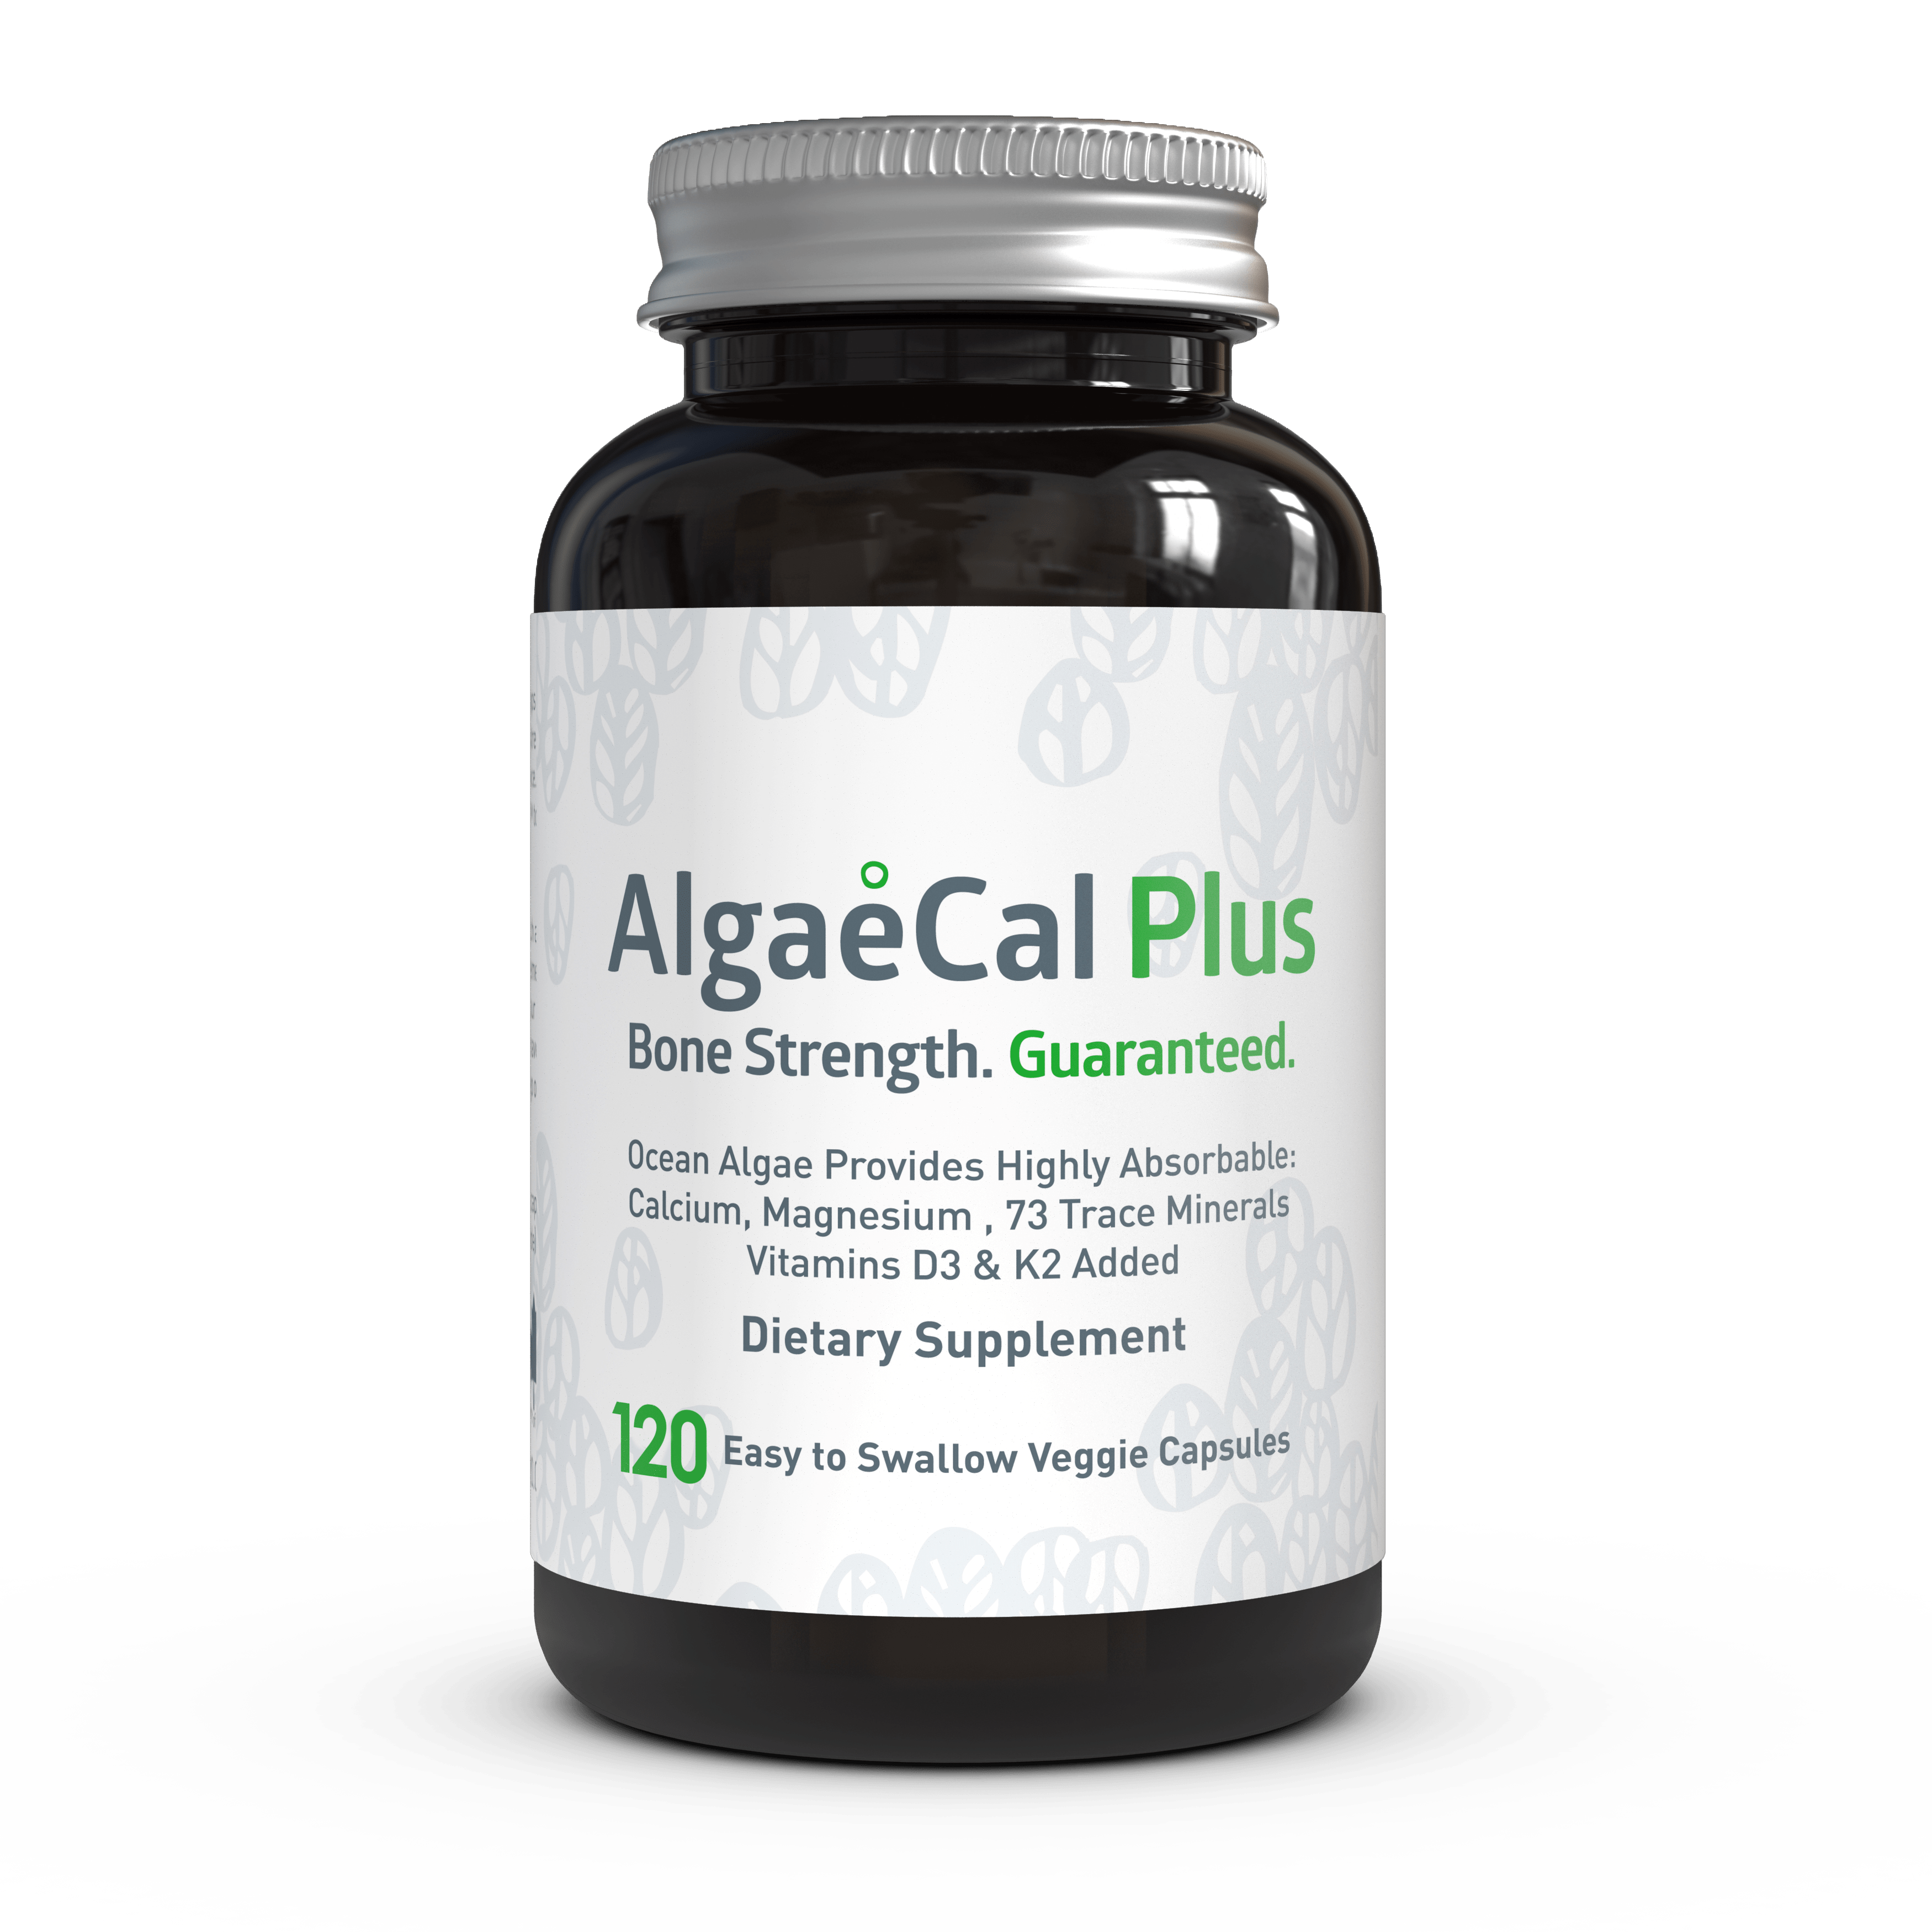 Algaecal Plus